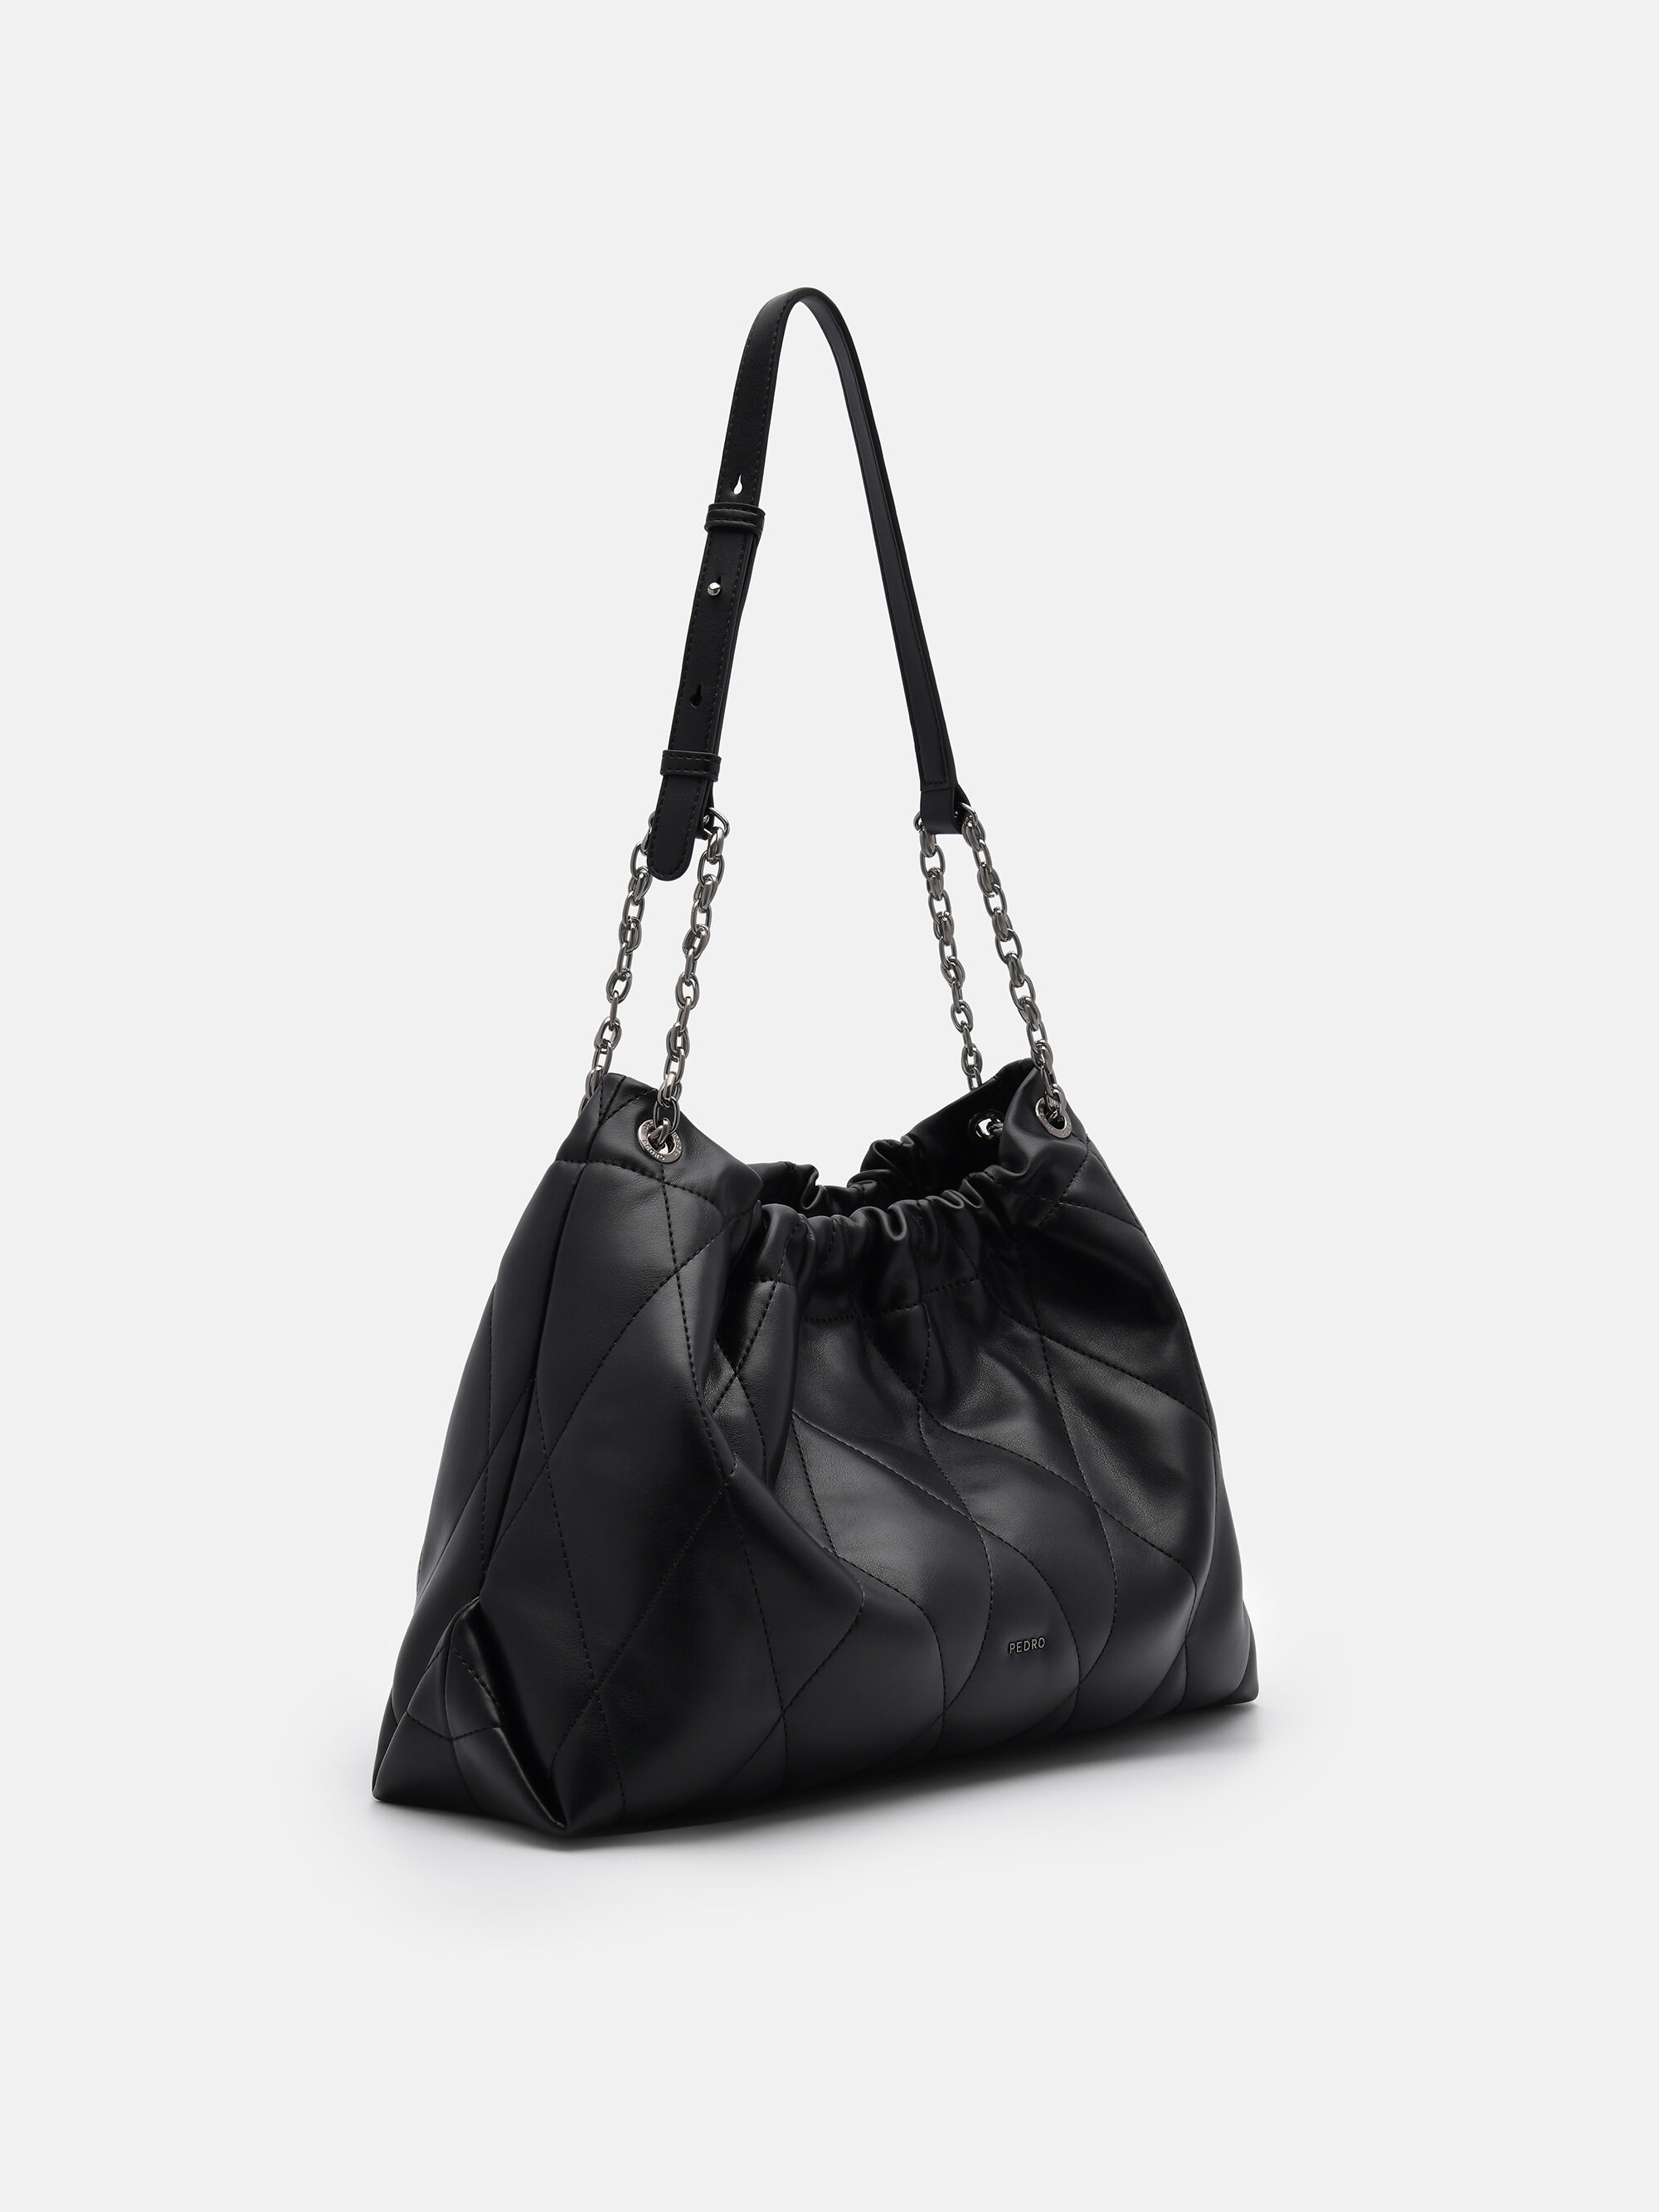 Kaia Quilted Shoulder Bag, Black